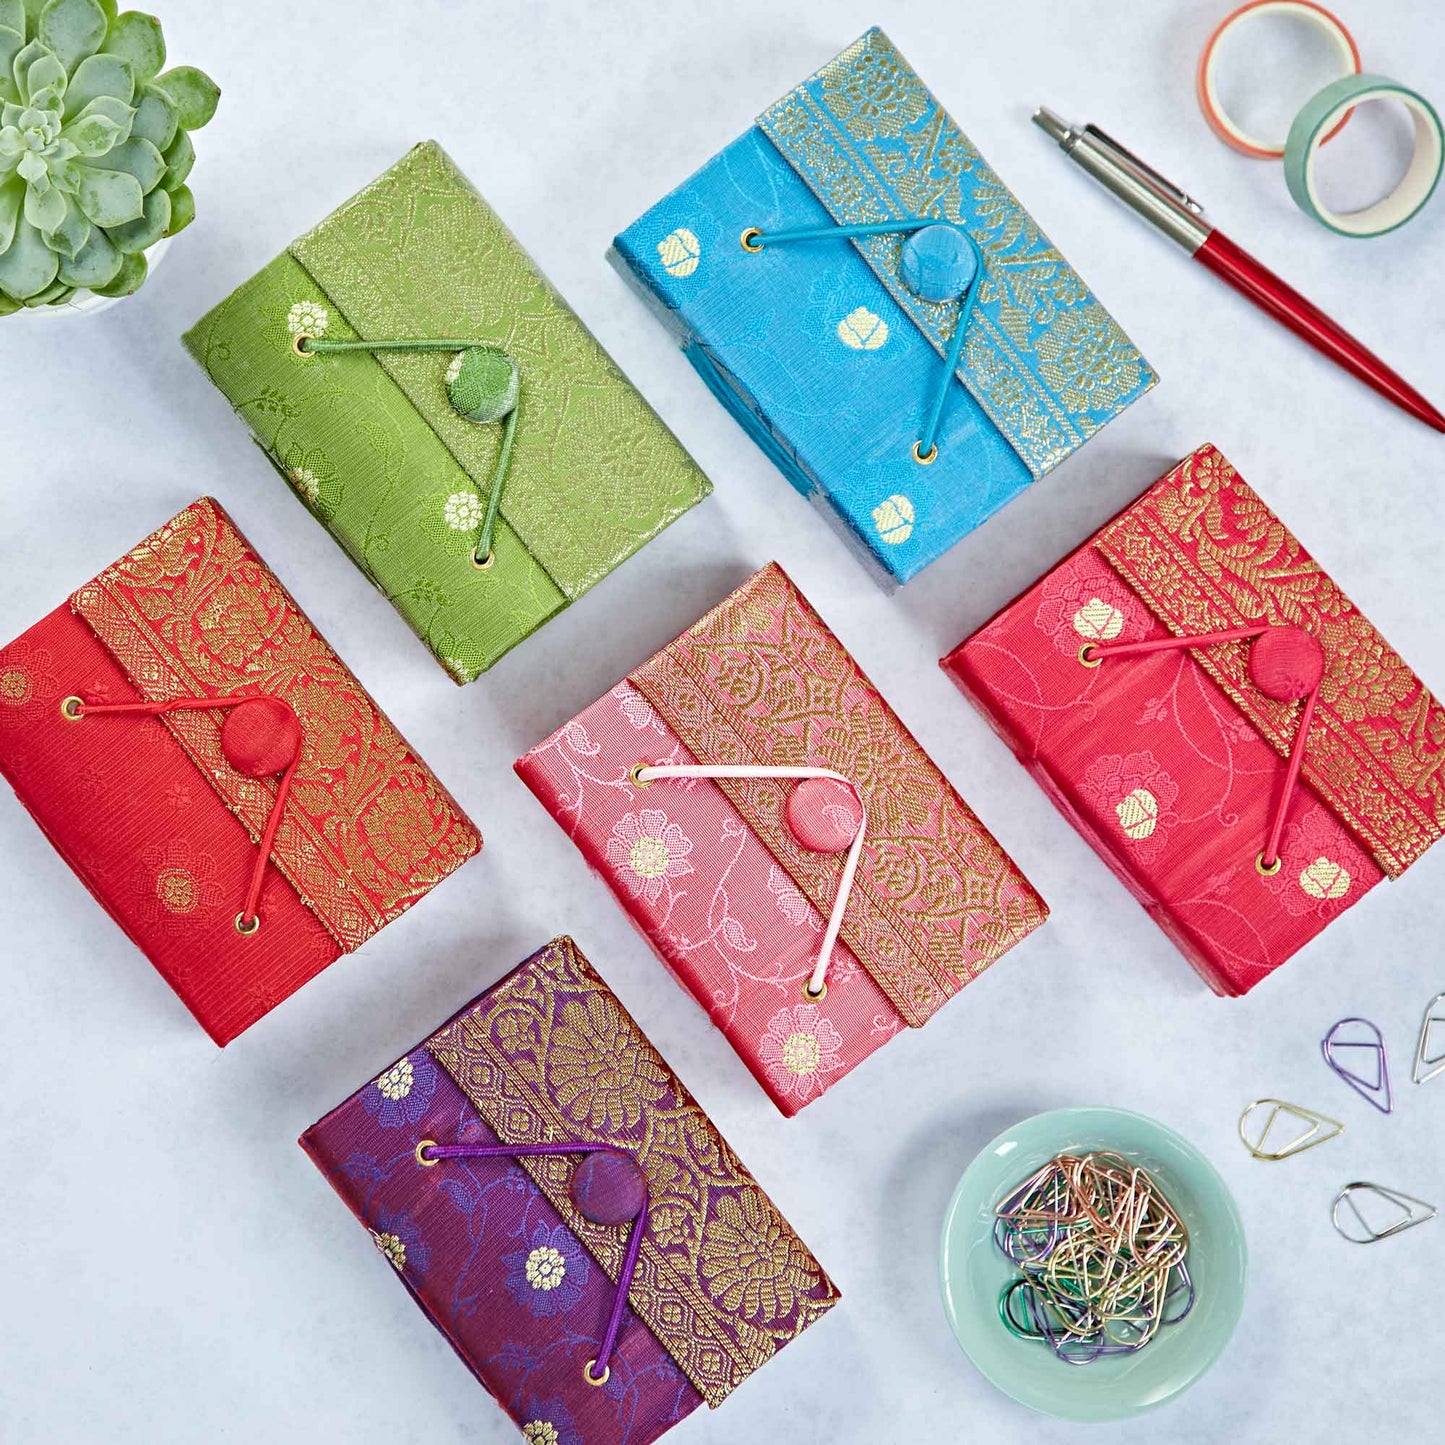 Handmade Sari Fabric Journals